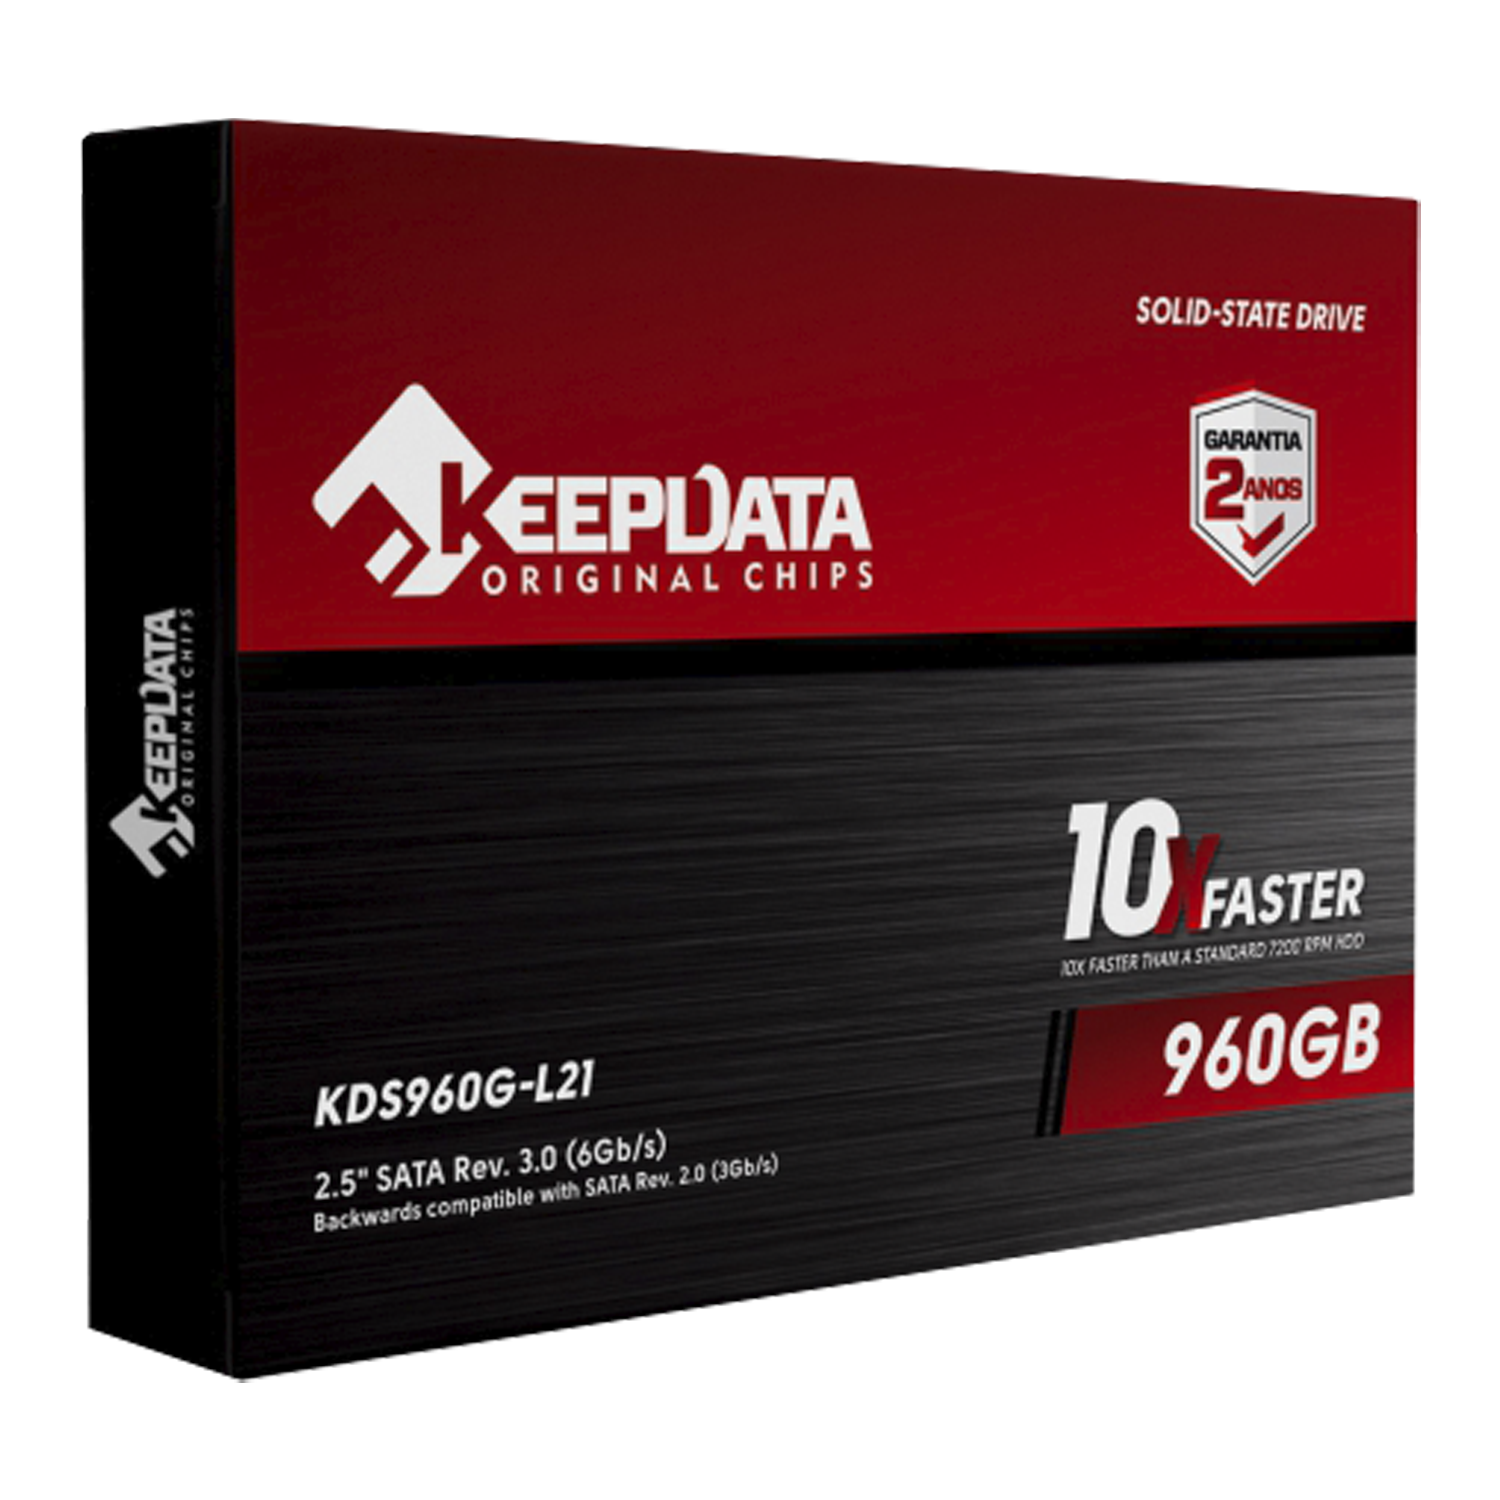 SSD Keepdata 960GB / 2.5" / SATA 3 - (KDS960G-L21)